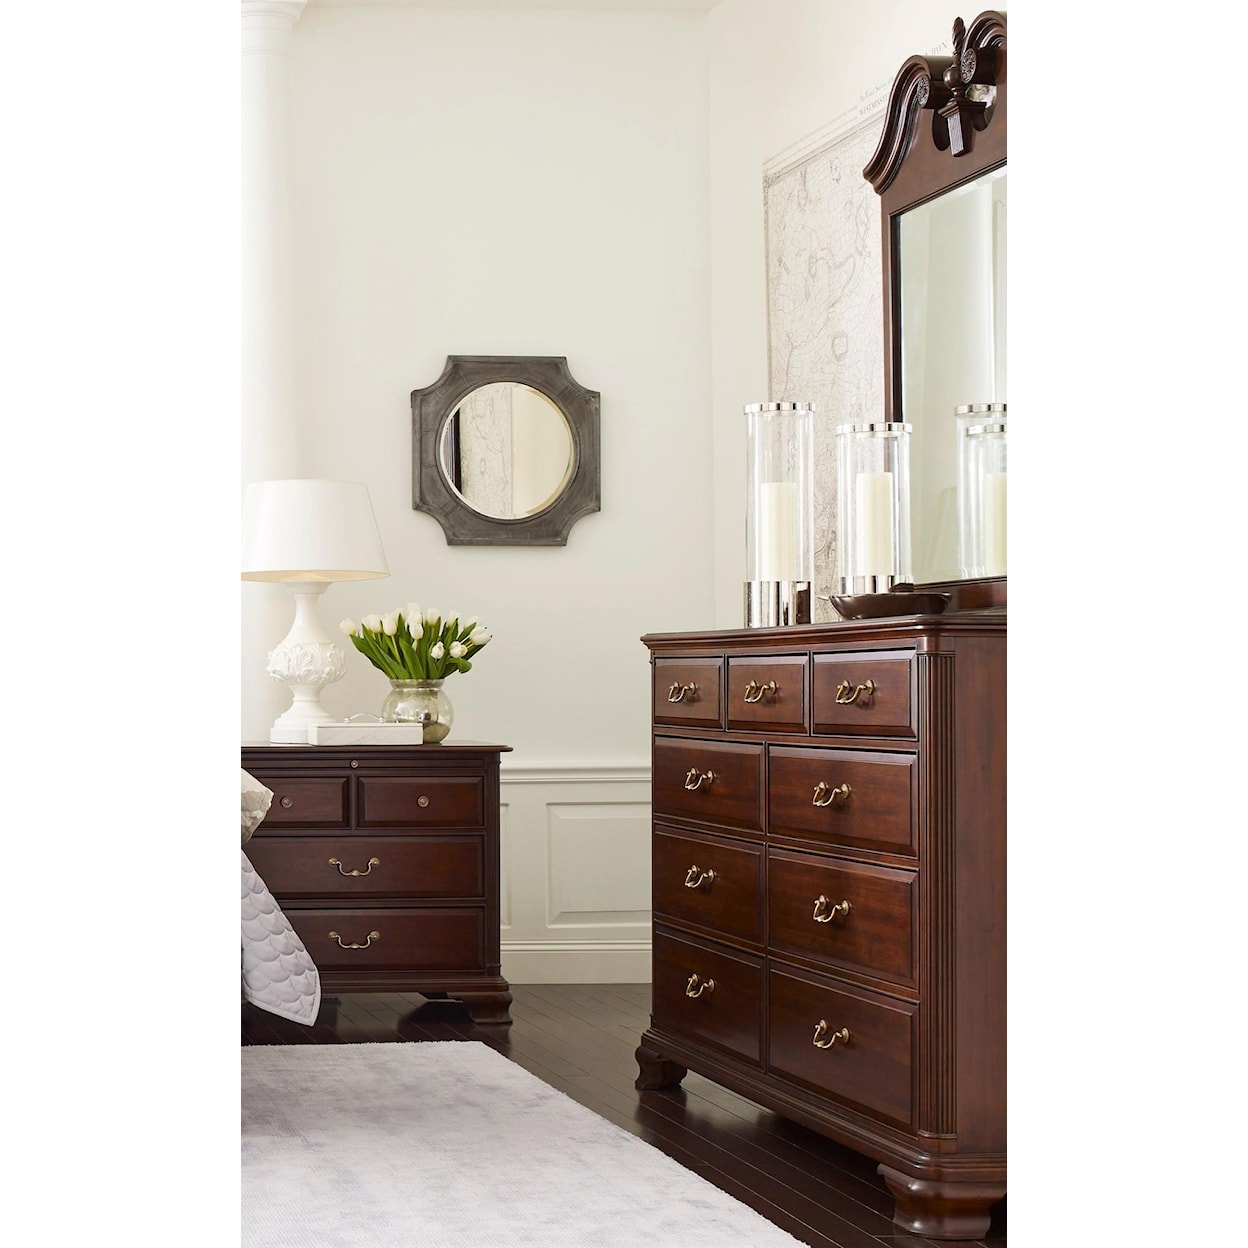 Kincaid Furniture Hadleigh Dresser and Mirror Set